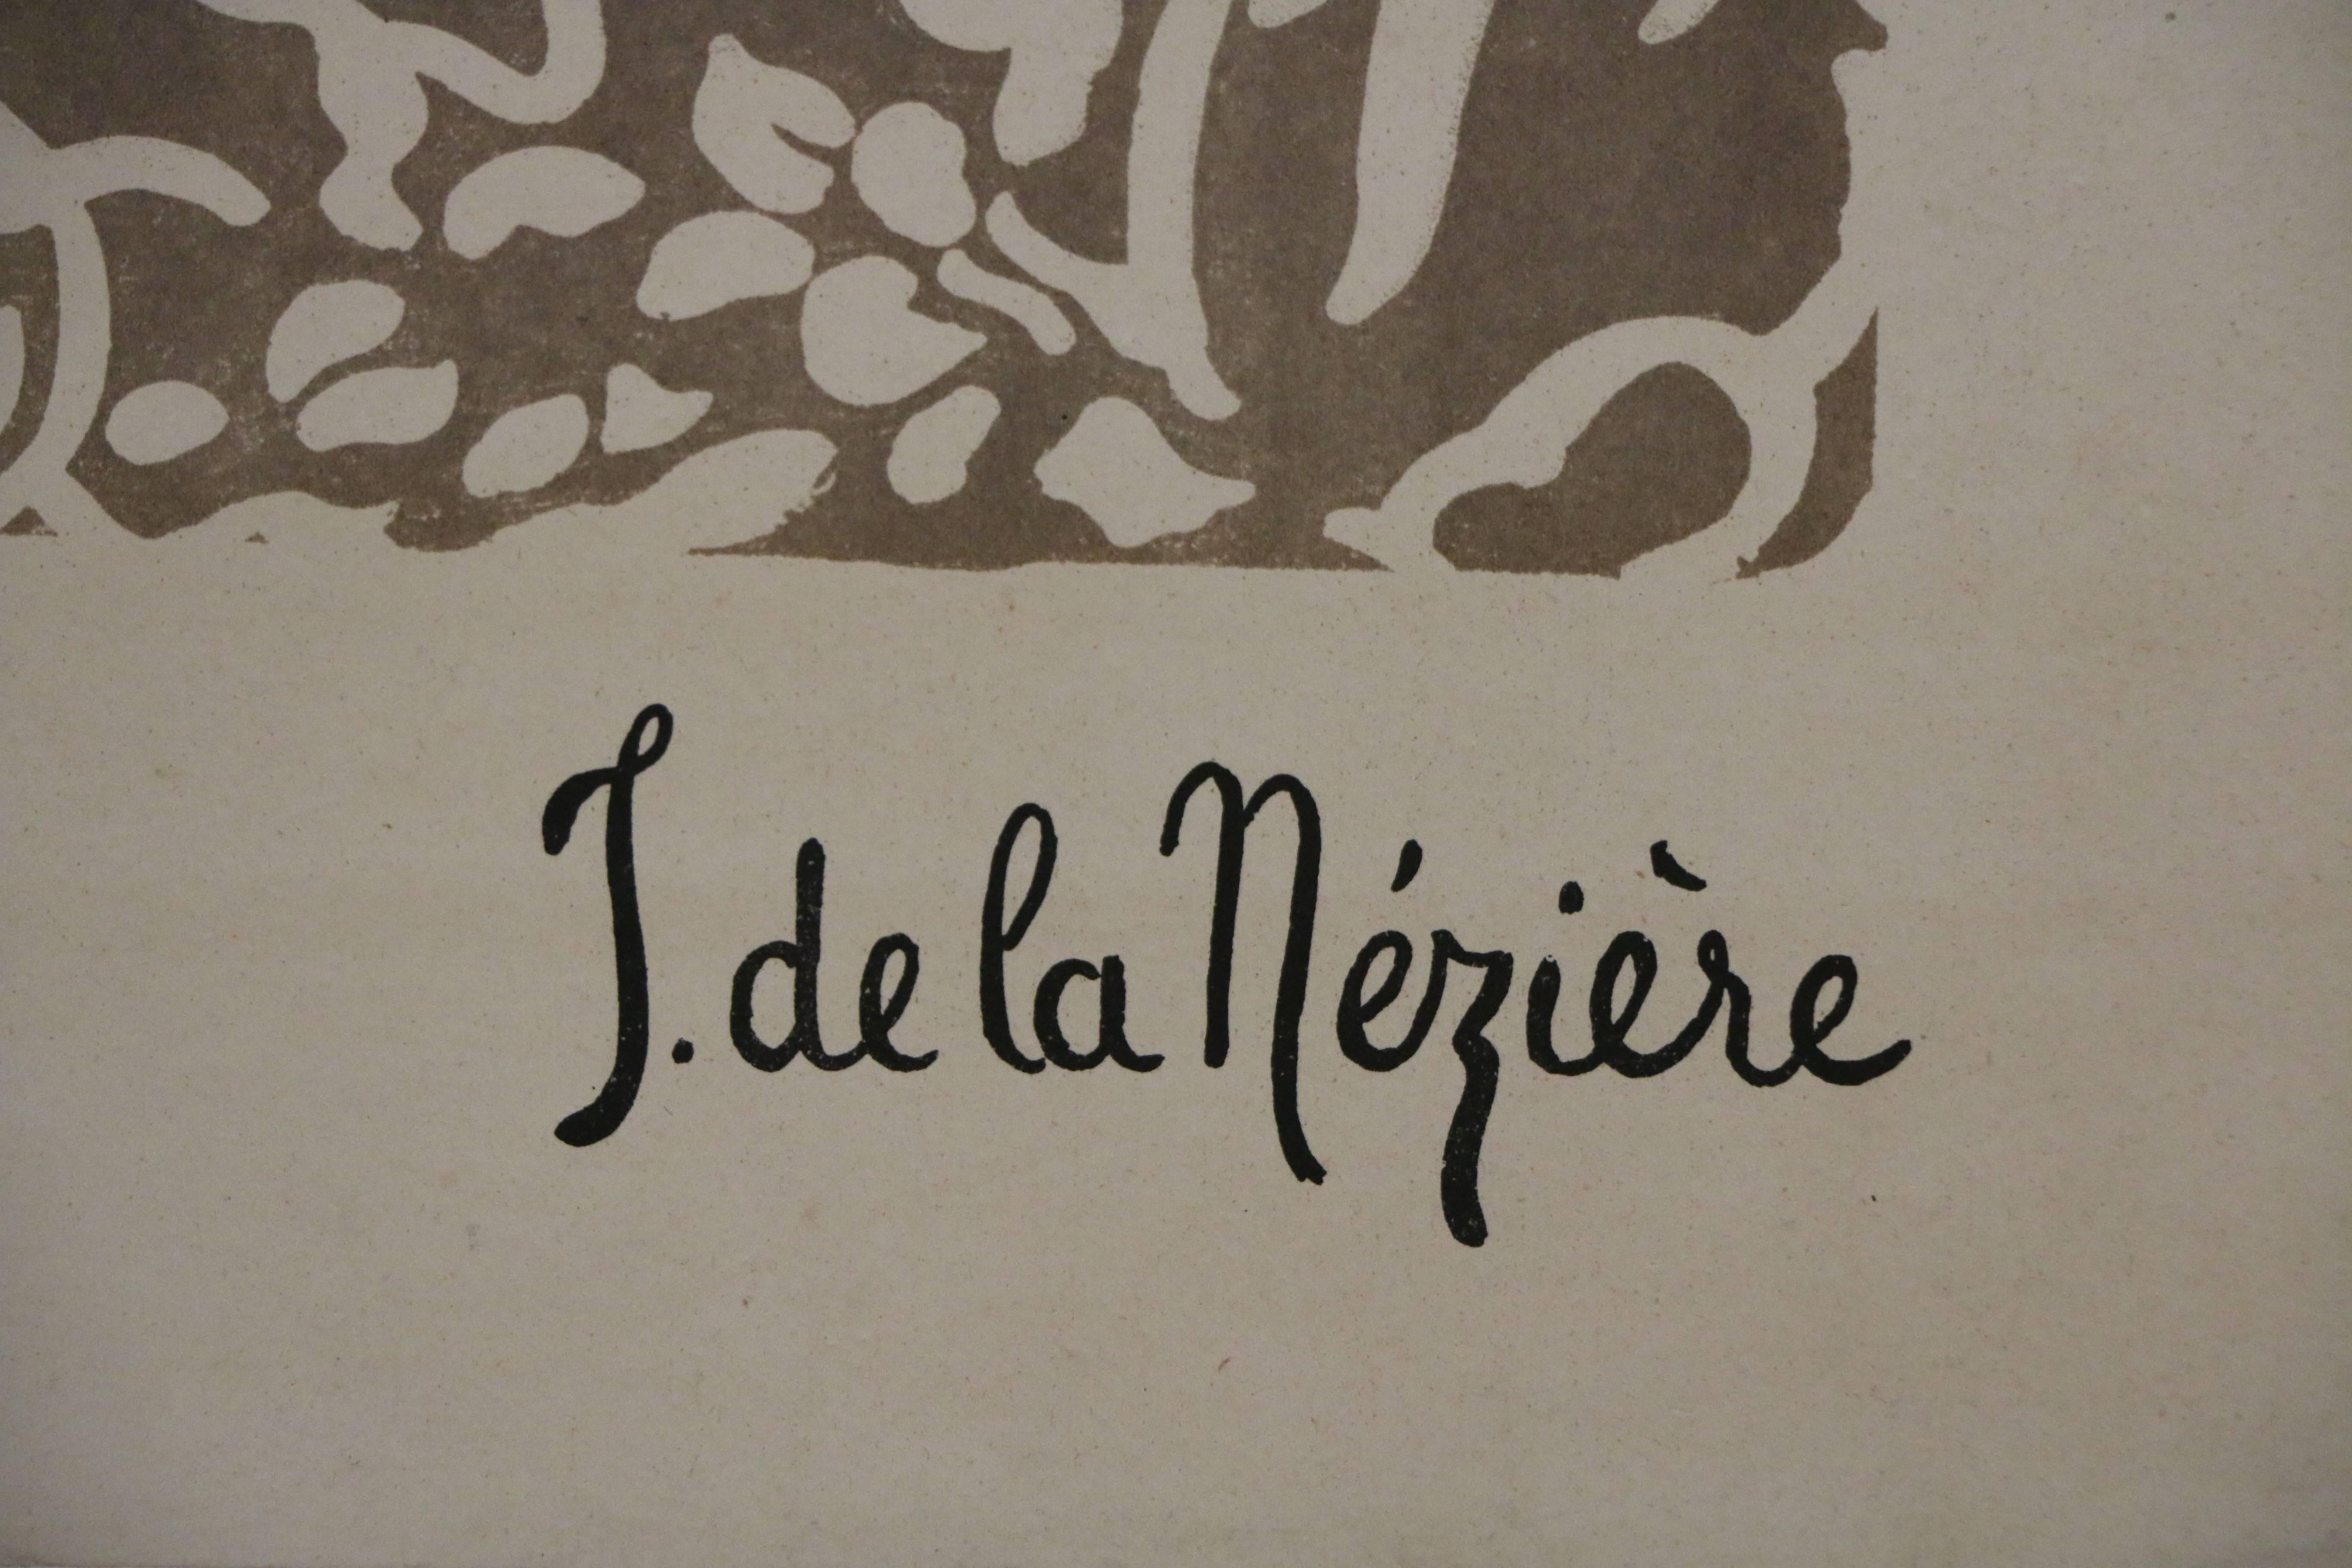 Cette affiche a été conçue par Jean de la Mézière pour la célèbre Exposition Coloniale Internationale de Paris 1931. Il s'agit d'une affiche originale imprimée par l'Imprimerie de Vaugirard. Cette affiche est rarement vue.

L'Exposition coloniale